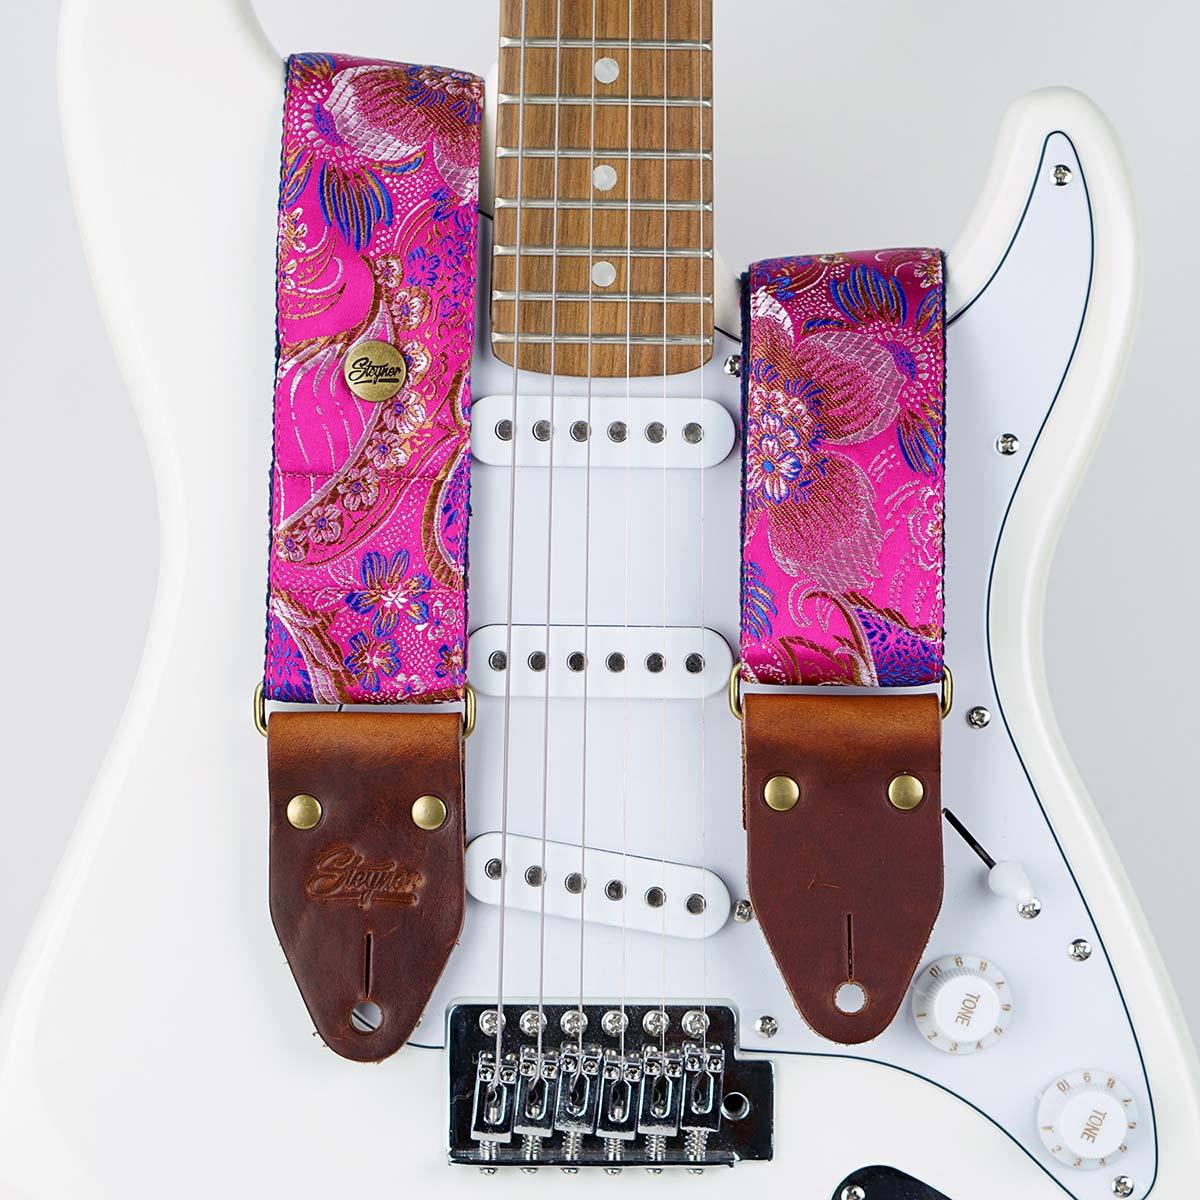 Gitarrengurt pink im vintage Stil mit Blumen Muster auf einer weißen E-Gitarre